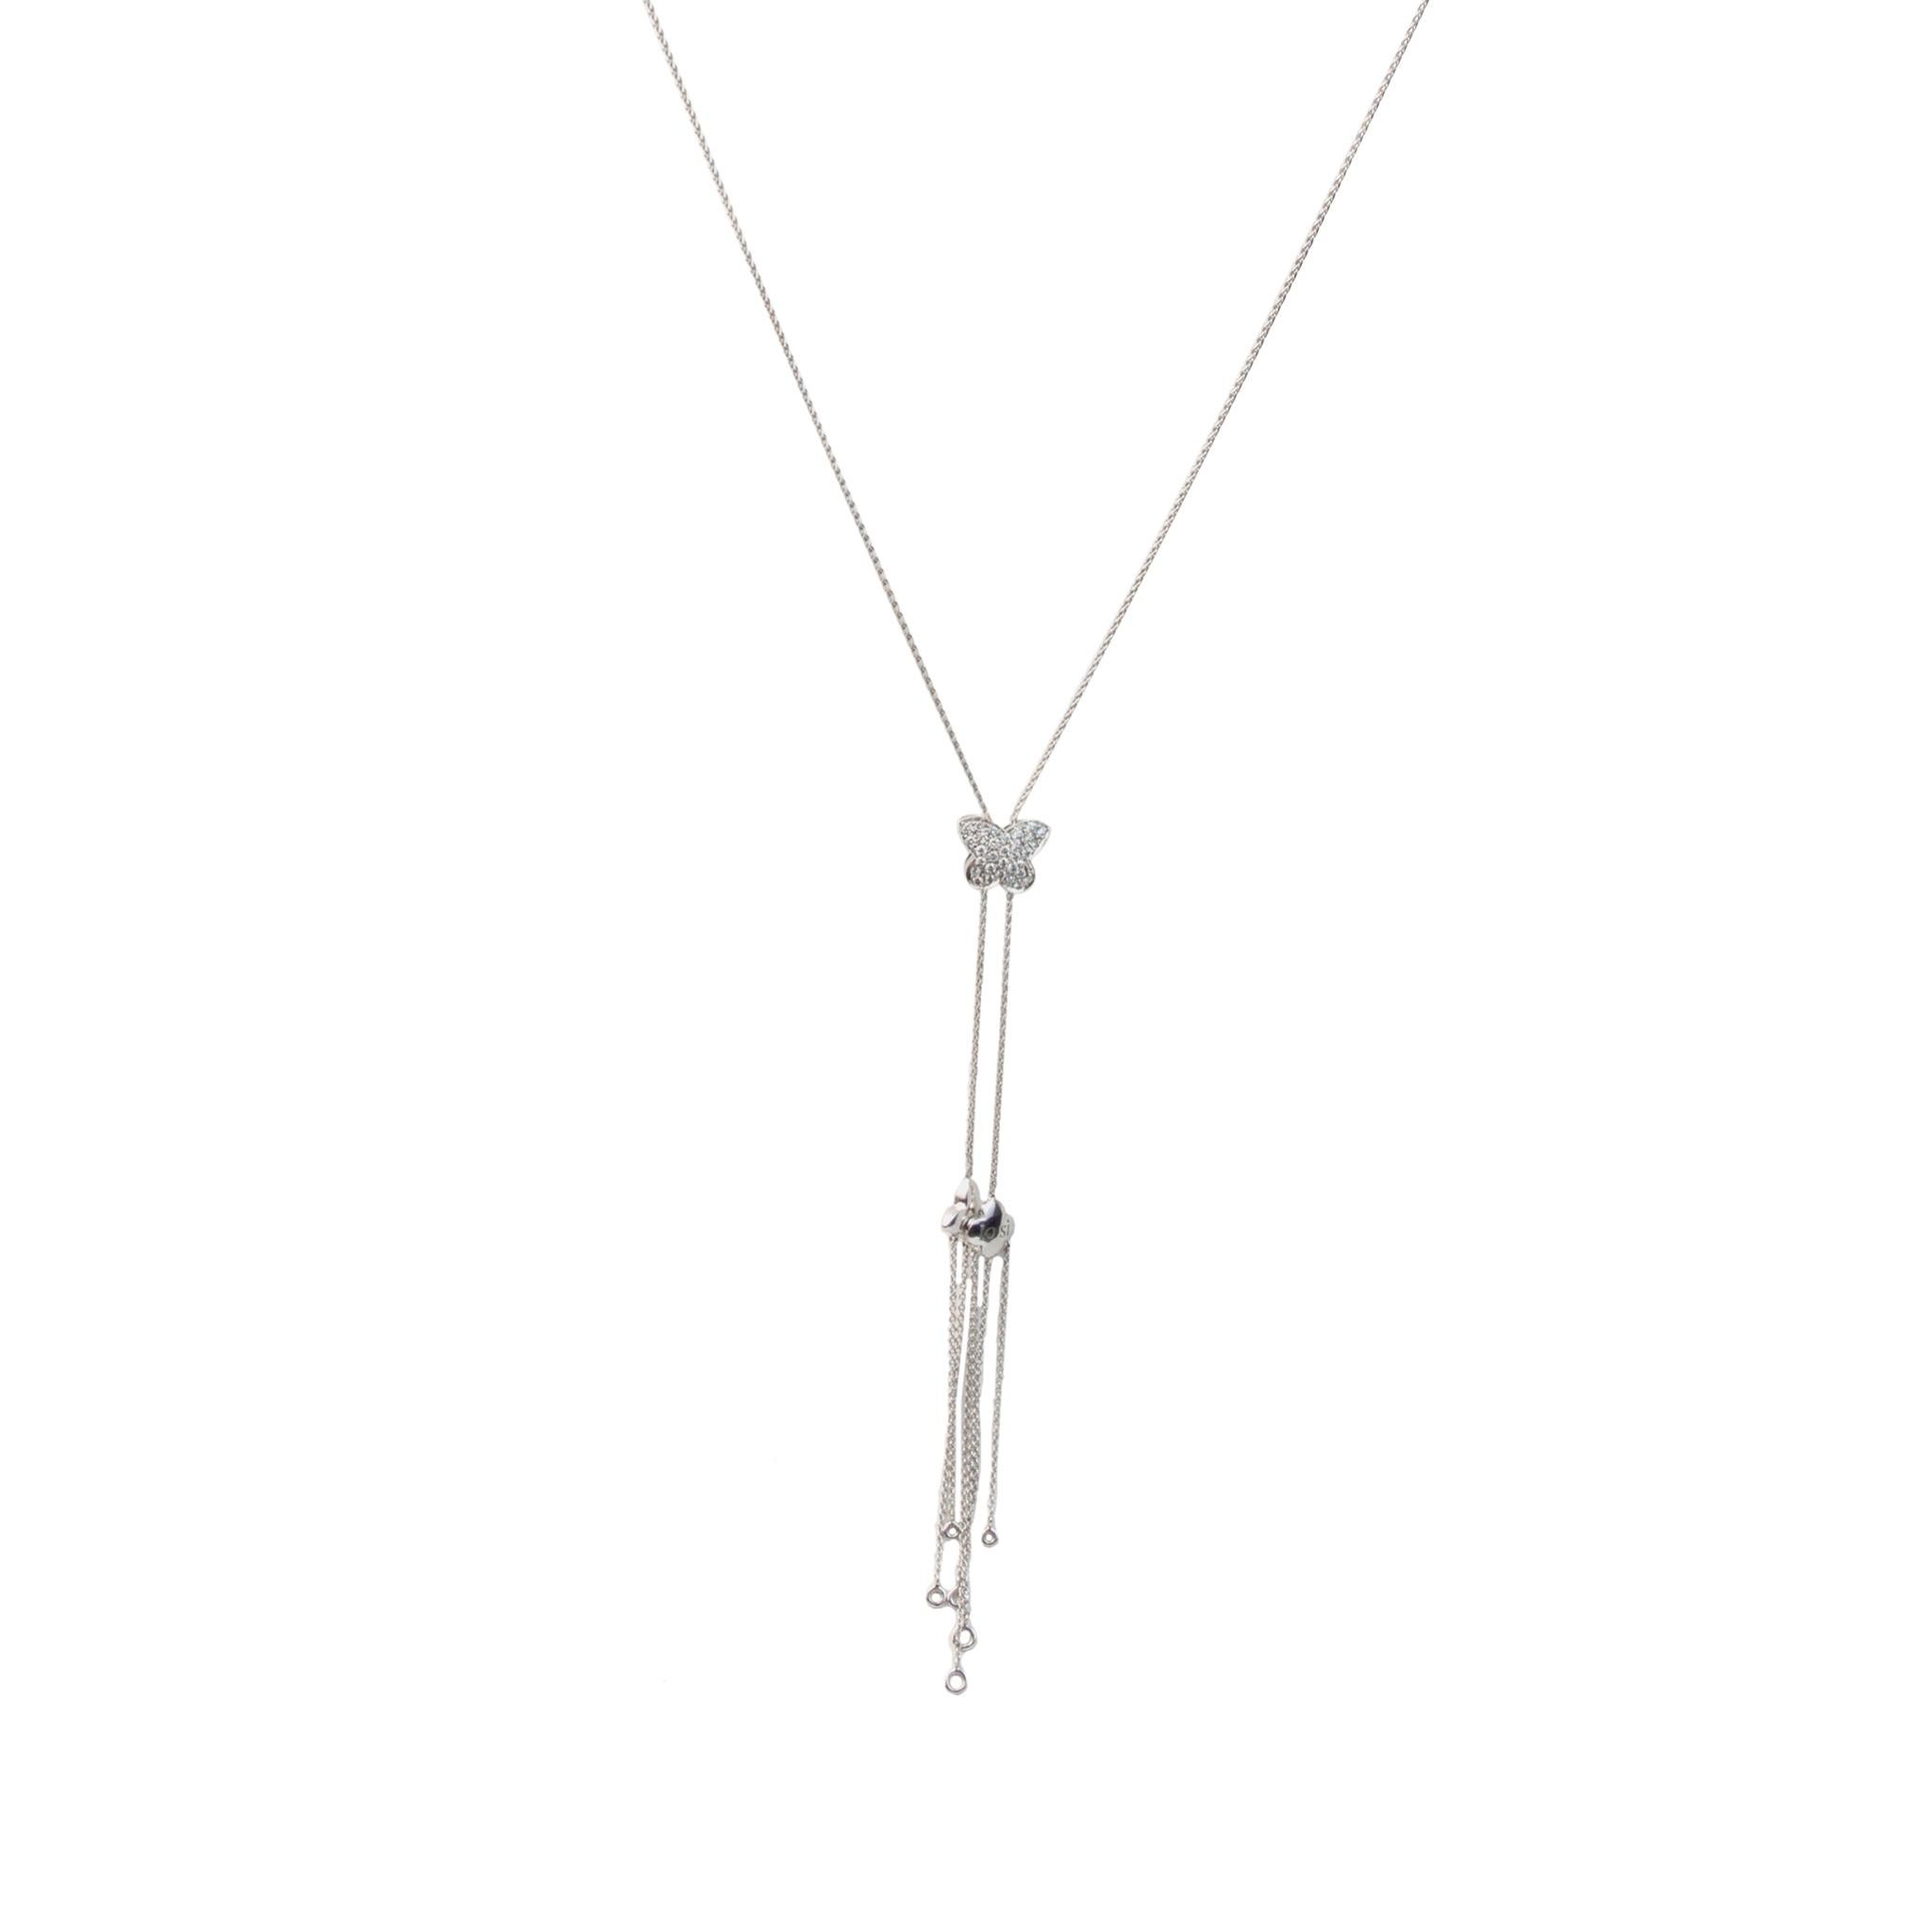 IO SI 18K White Gold Necklace
Diamond: 0.62ctw
Model number: 90188PE600
SKU: BLU01952
Retail price: $9,500.00